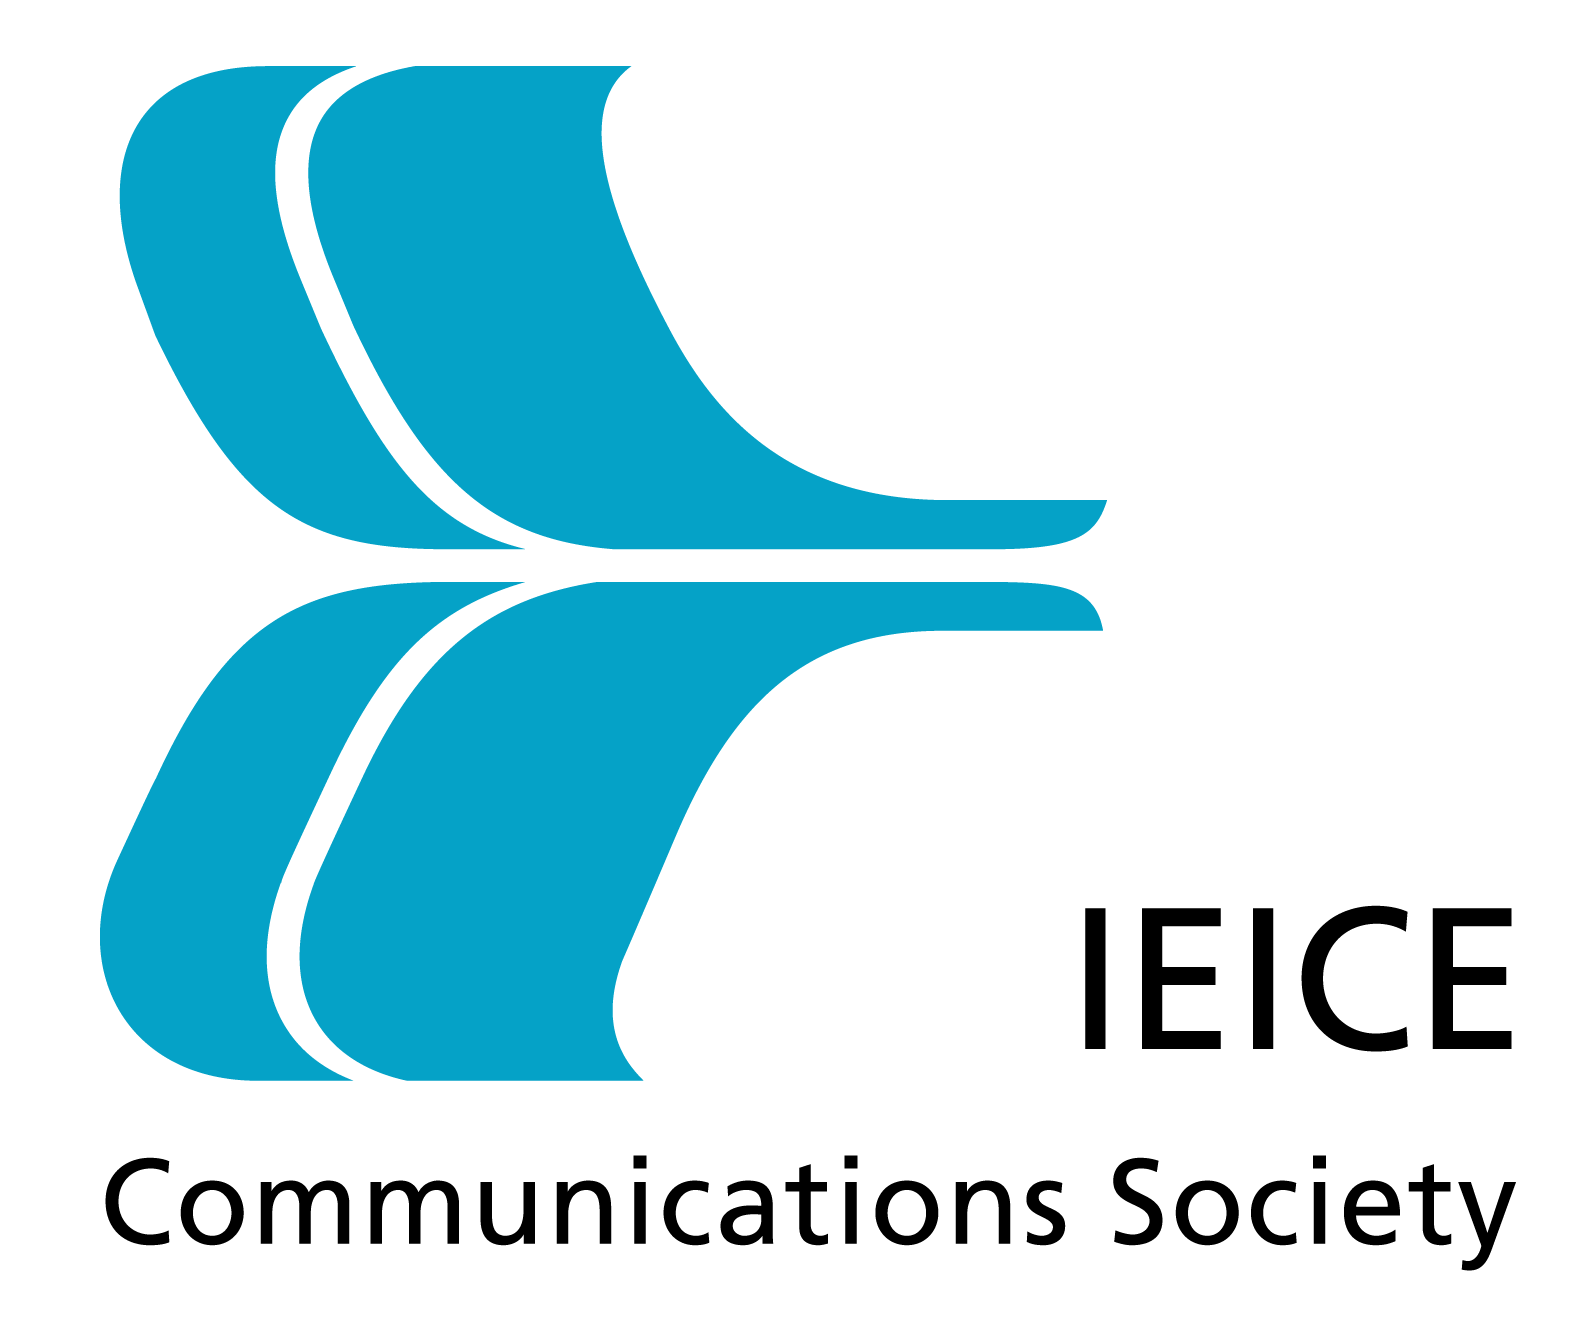 ieice_logo